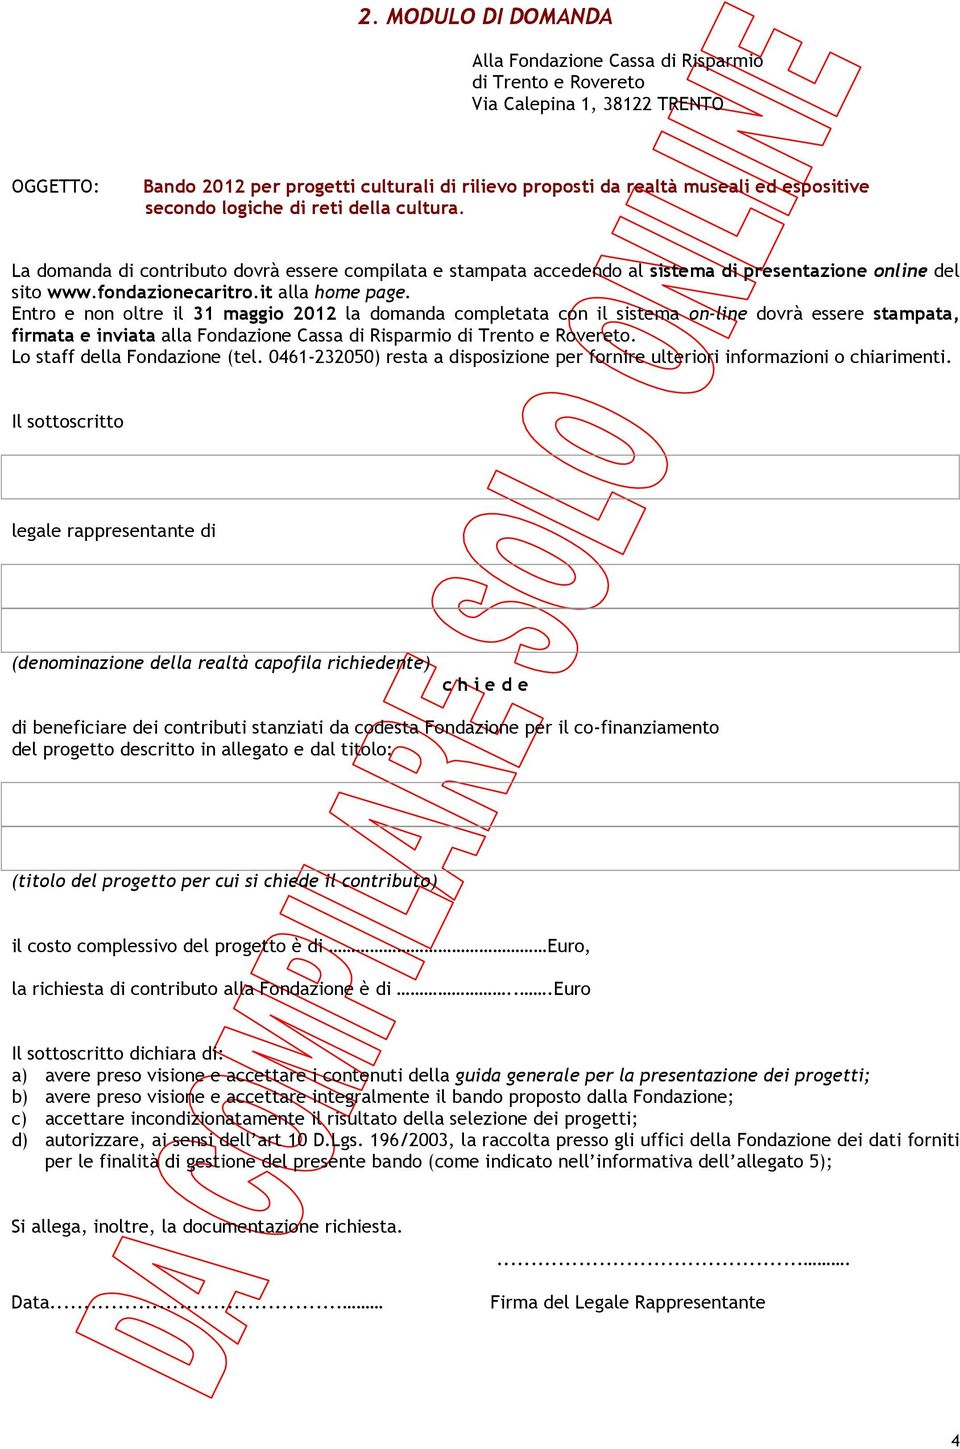 it alla home page. Entro e non oltre il 31 maggio 2012 la domanda completata con il sistema on-line dovrà essere stampata, firmata e inviata alla Fondazione Cassa di Risparmio di Trento e Rovereto.